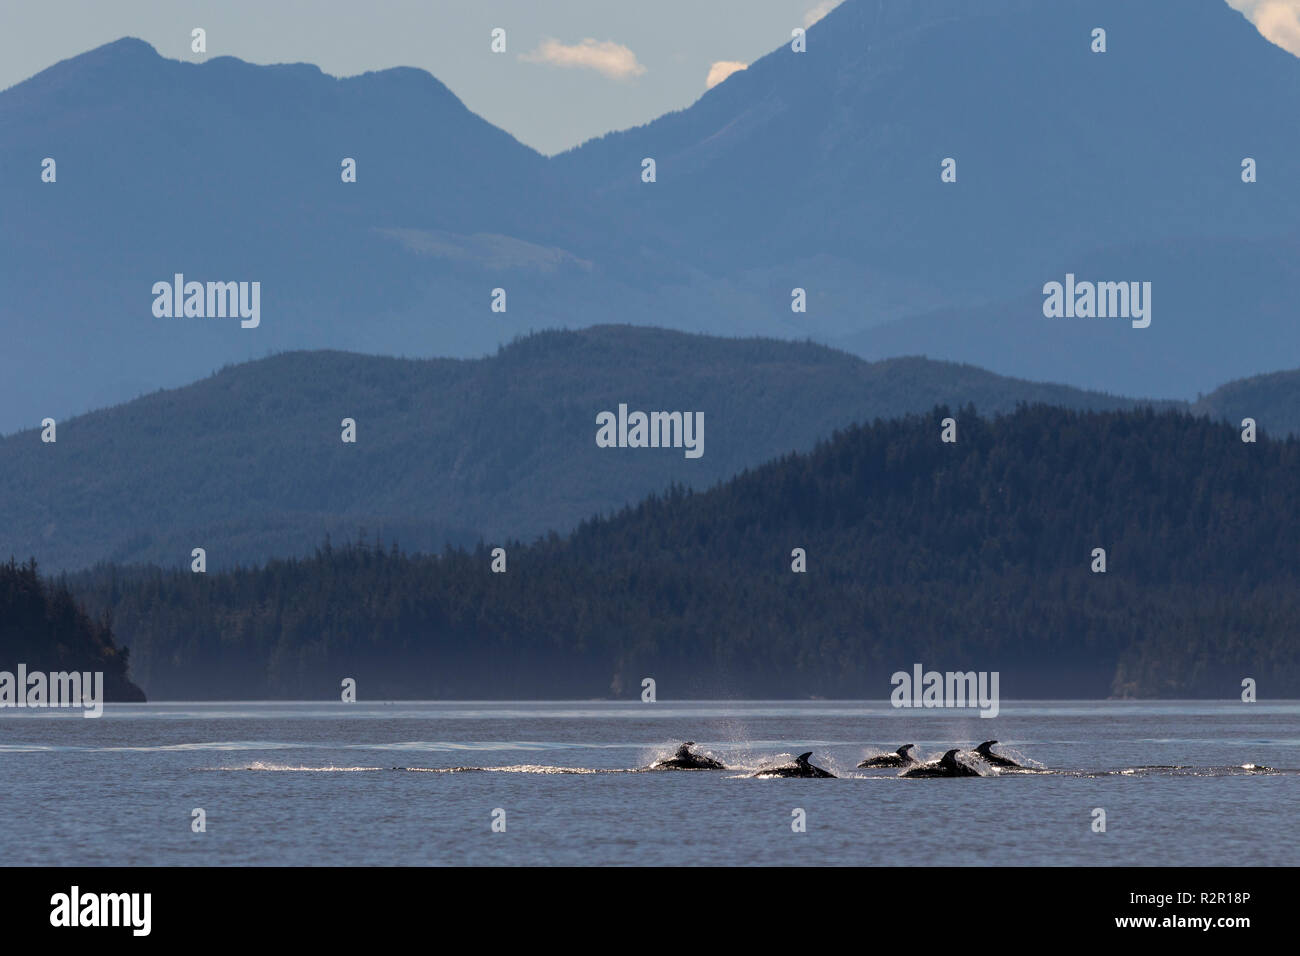 Un groupe de dauphins à flancs blancs du Pacifique se déplace dans l'archipel Broughton, le territoire des Premières Nations au large de l'île de Vancouver, Colombie-Britannique, Canada Banque D'Images